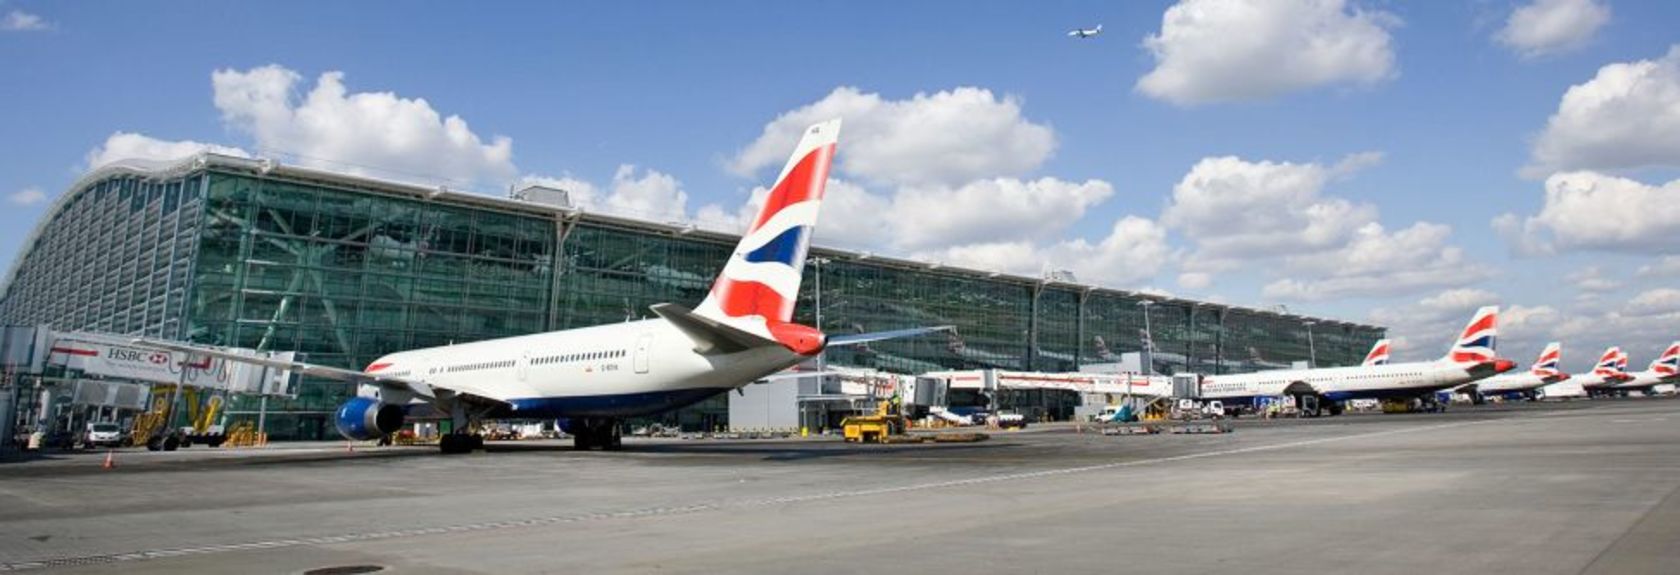 O maior e mais conhecido aeroporto de Londres é o Aeroporto Internacional London Heathrow Airport. O aeroporto está localizado a oeste de Londres, a cerca de 27 quilômetros do centro da cidade.